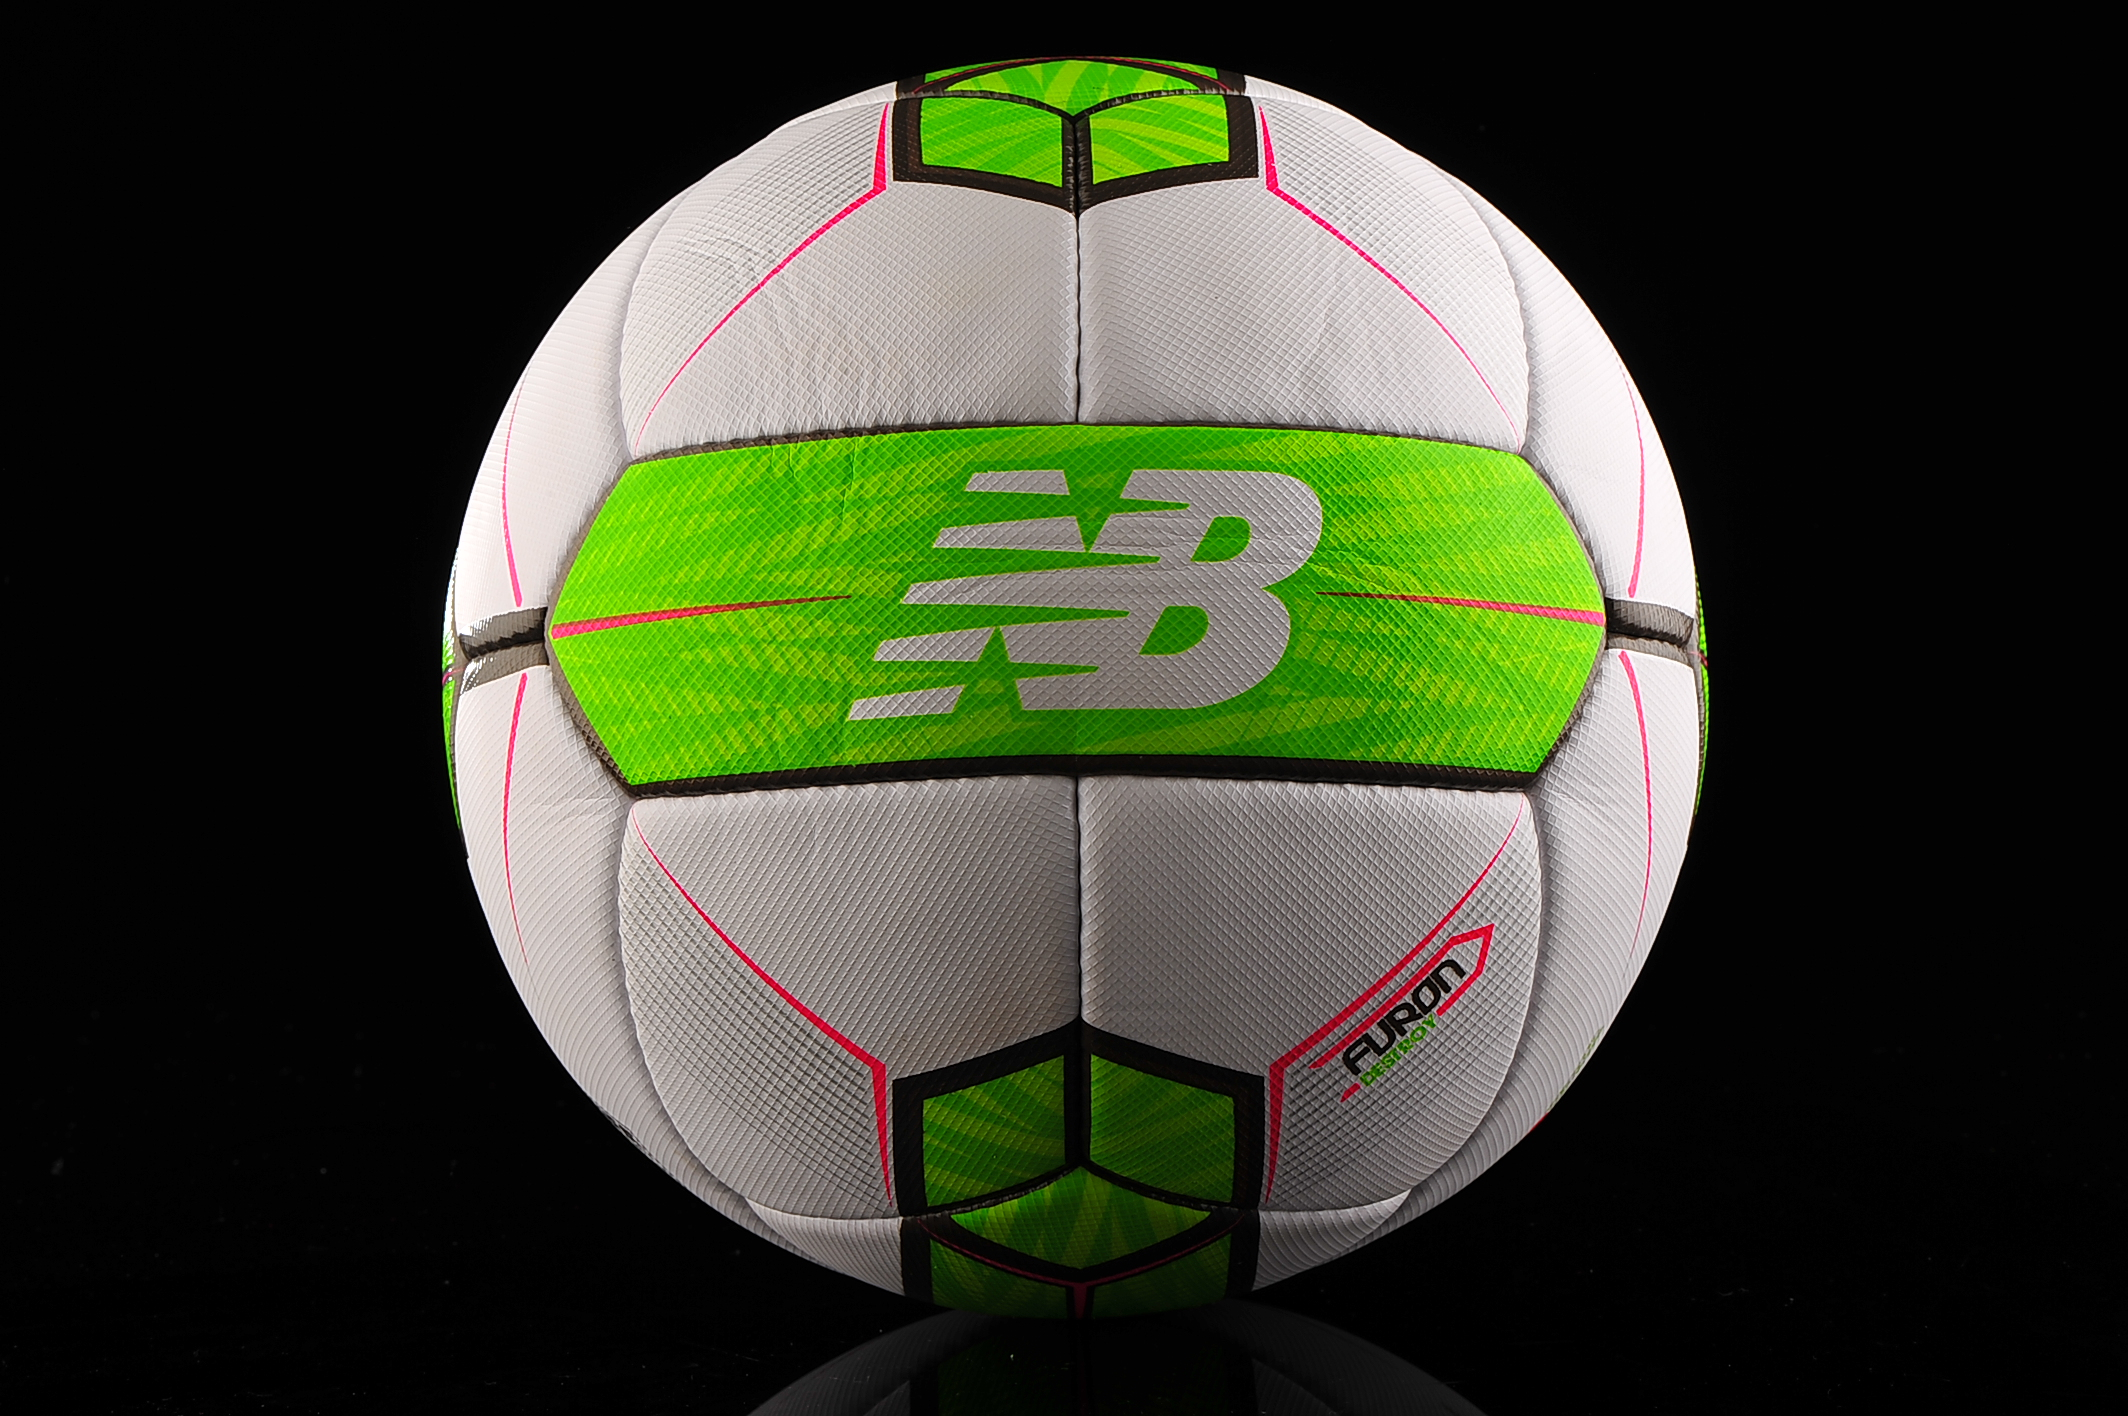 Ball New Balance Furon Destroy Ball 2017 Fifa Pro NFLDEST7 5 | R-GOL.com - Football boots & equipment